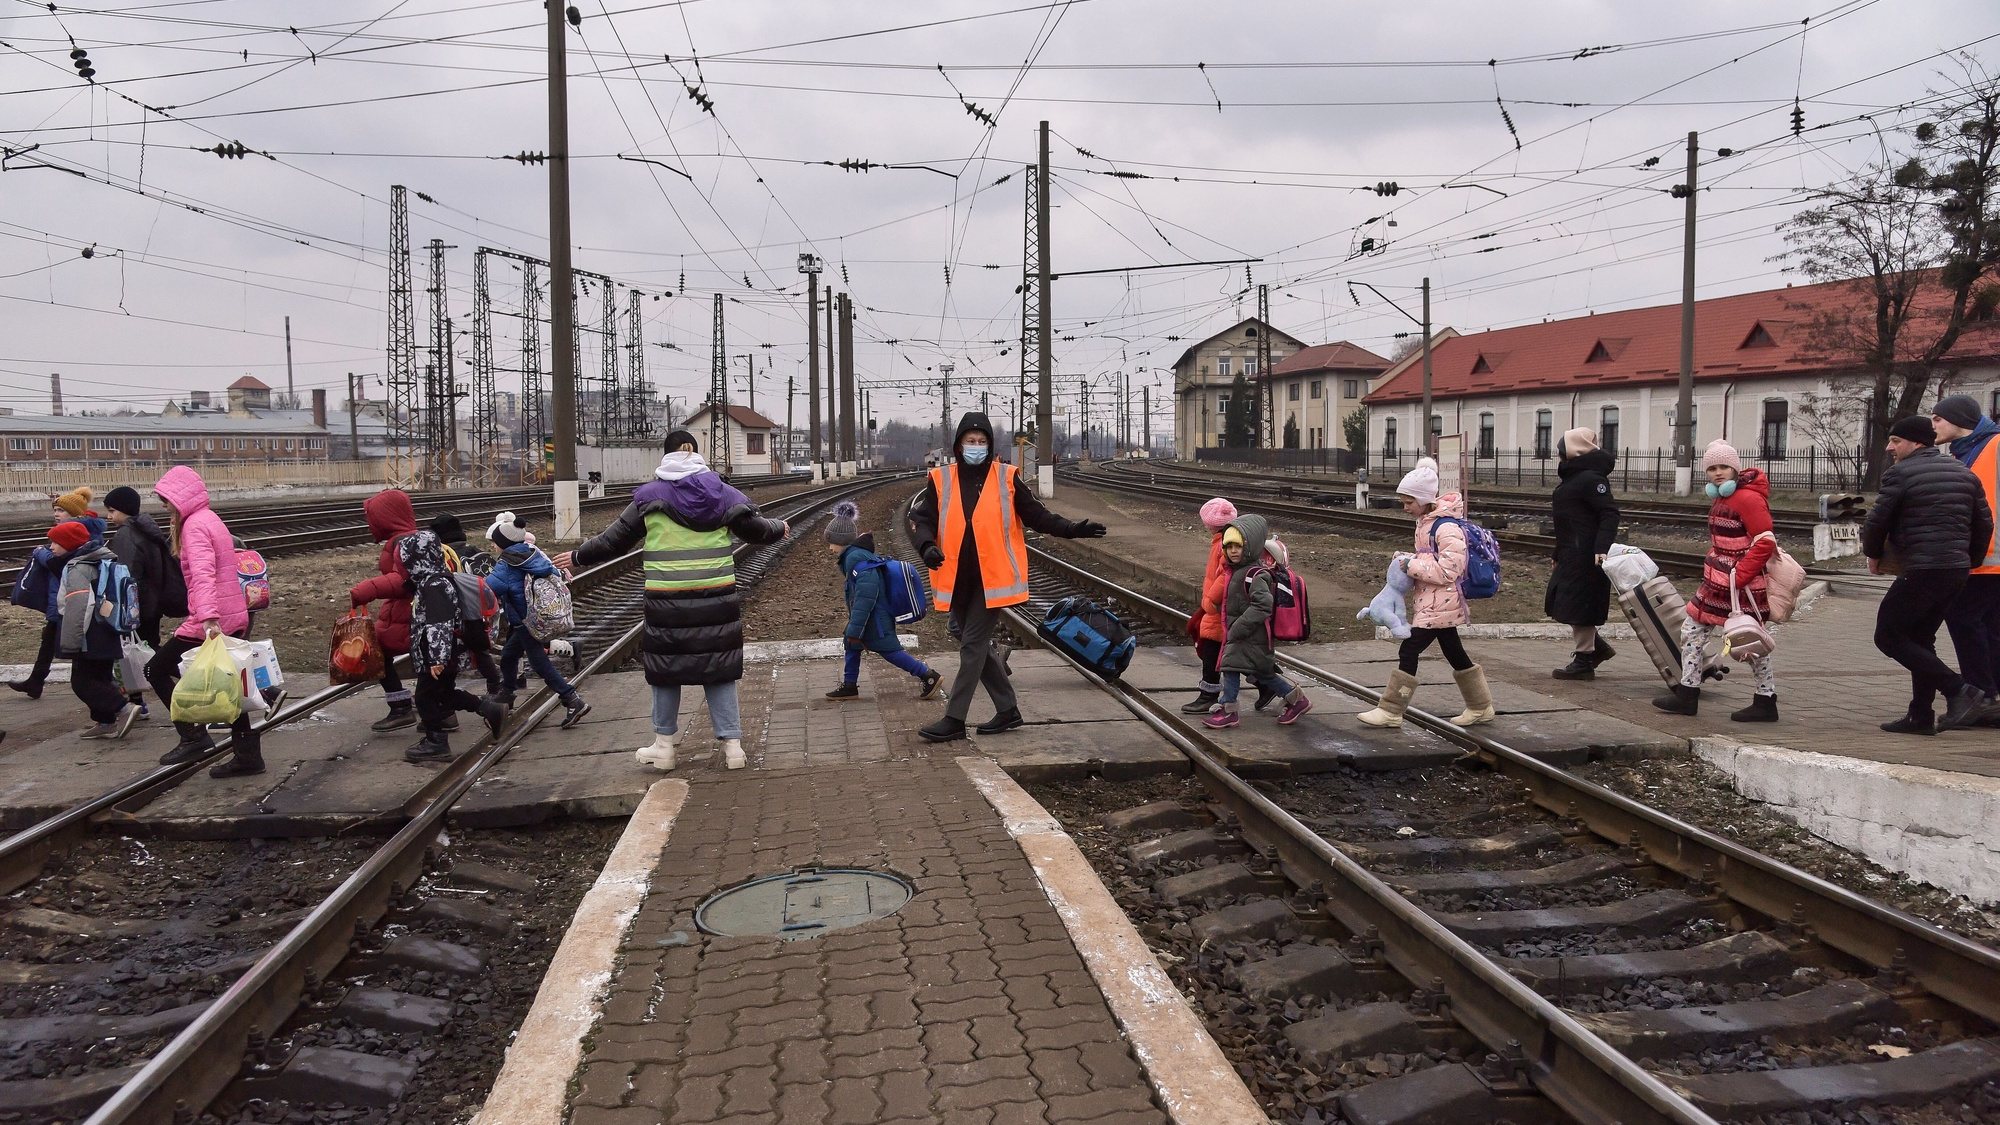 Crianças do orfanato de Hulaipole numa estação de comboio em Lviv, na Ucrânia. 7 de março de 2022